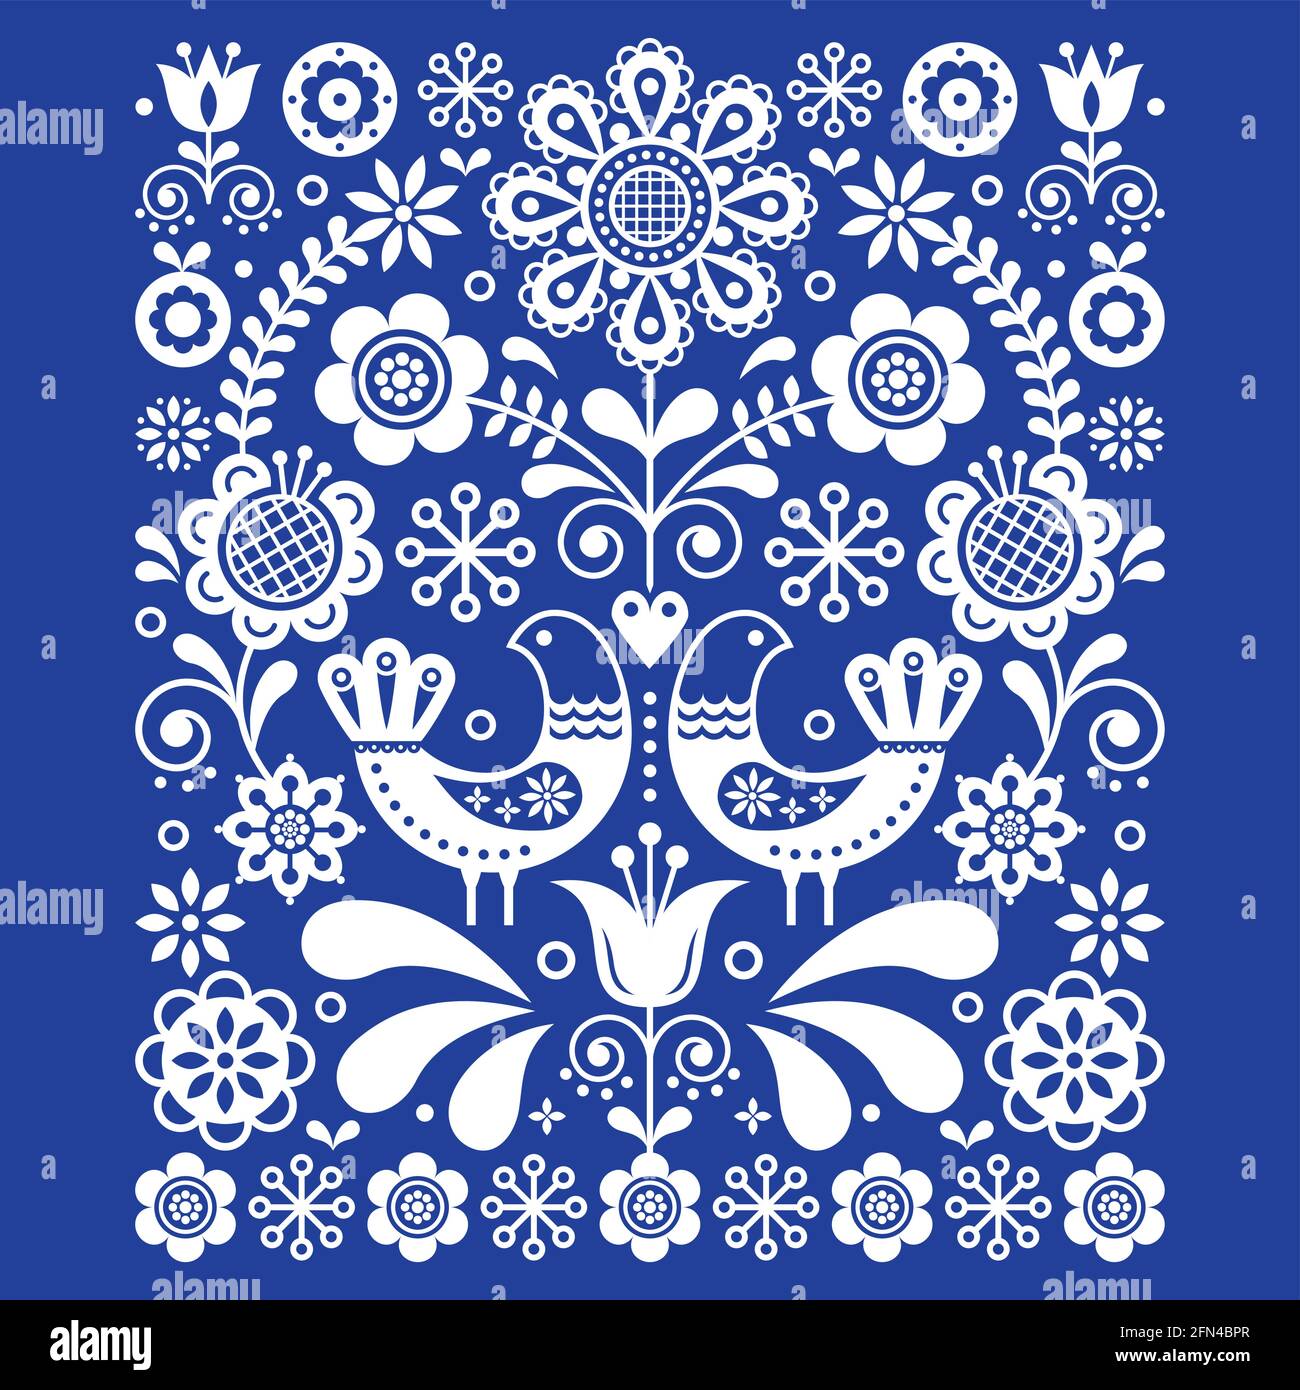 Carino arte folcloristica scandinava decorazione vettoriale con uccelli e fiori, motivi floreali scandinavi in bianco su blu navy Illustrazione Vettoriale